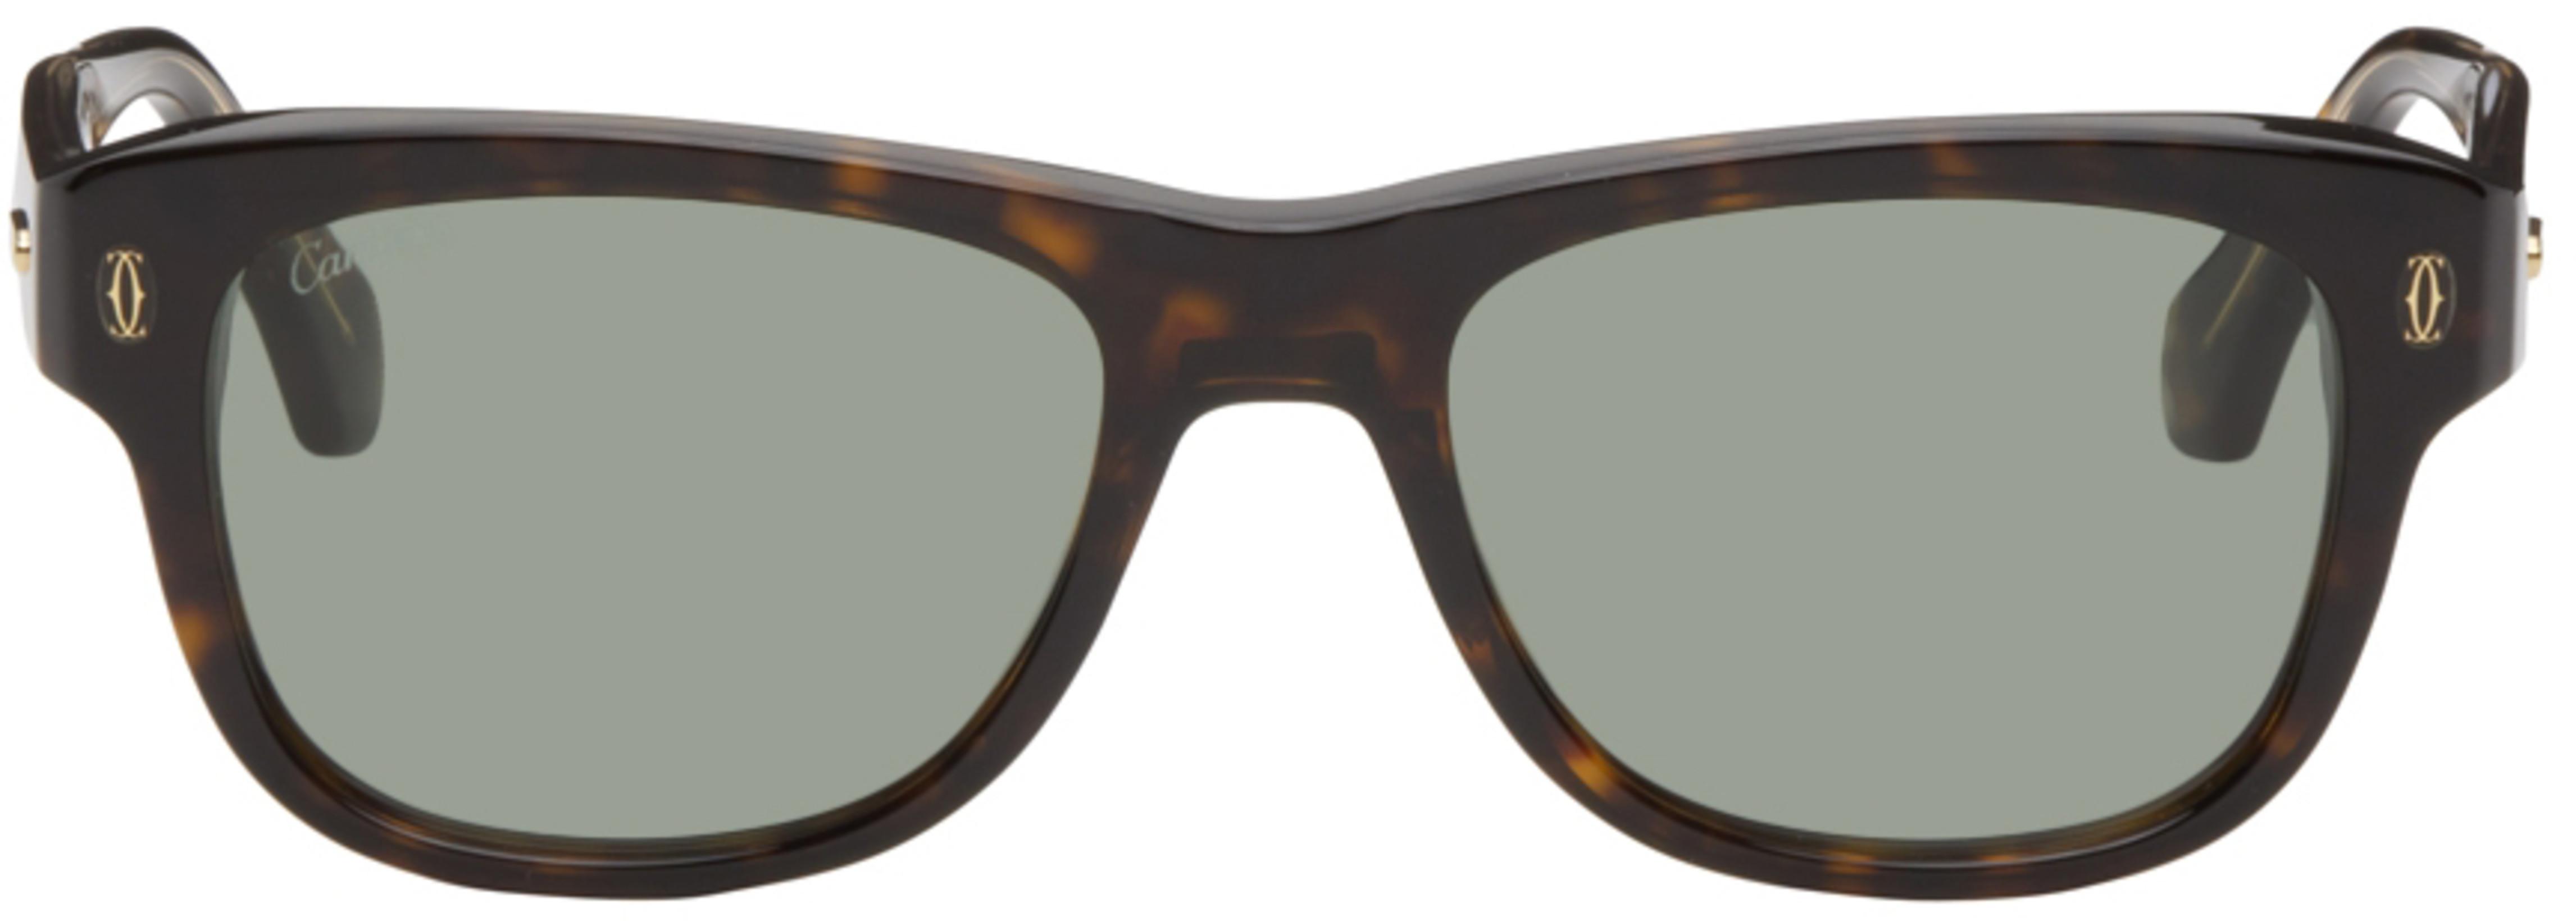 Tortoiseshell 'C de Cartier' Rectangular Sunglasses by CARTIER